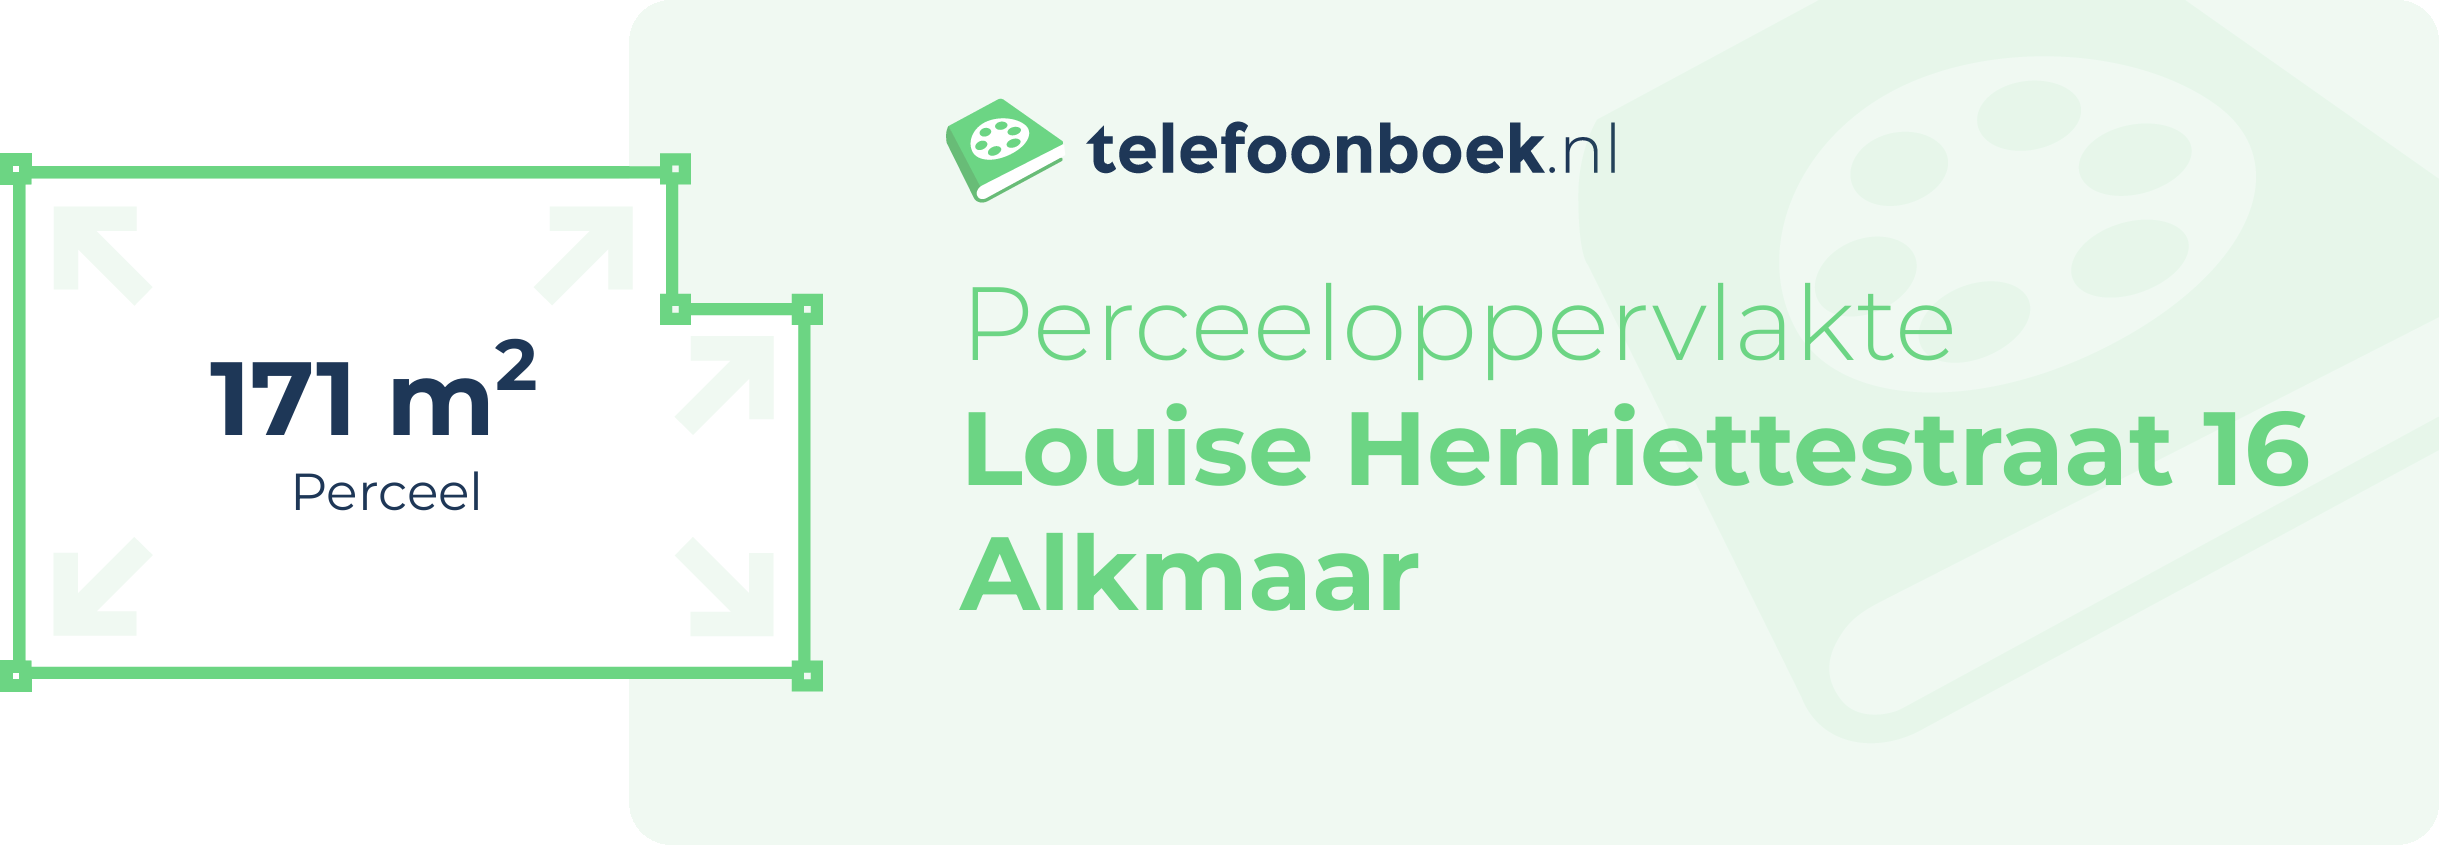 Perceeloppervlakte Louise Henriettestraat 16 Alkmaar